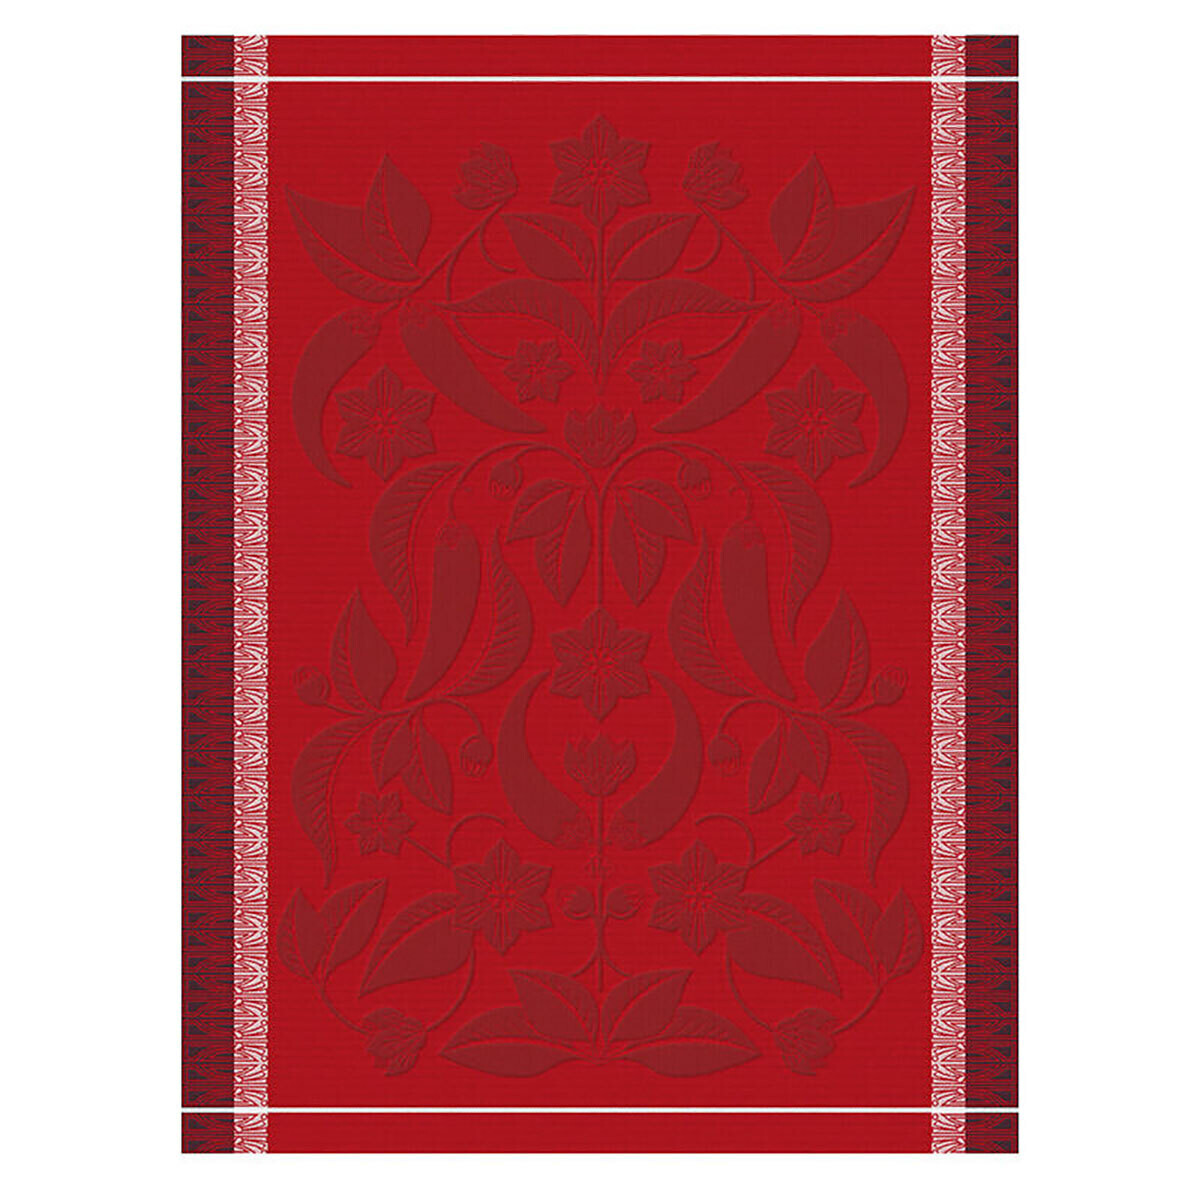 Le Jacquard Francais Piments Red Tea Towel 28979 Set of 4